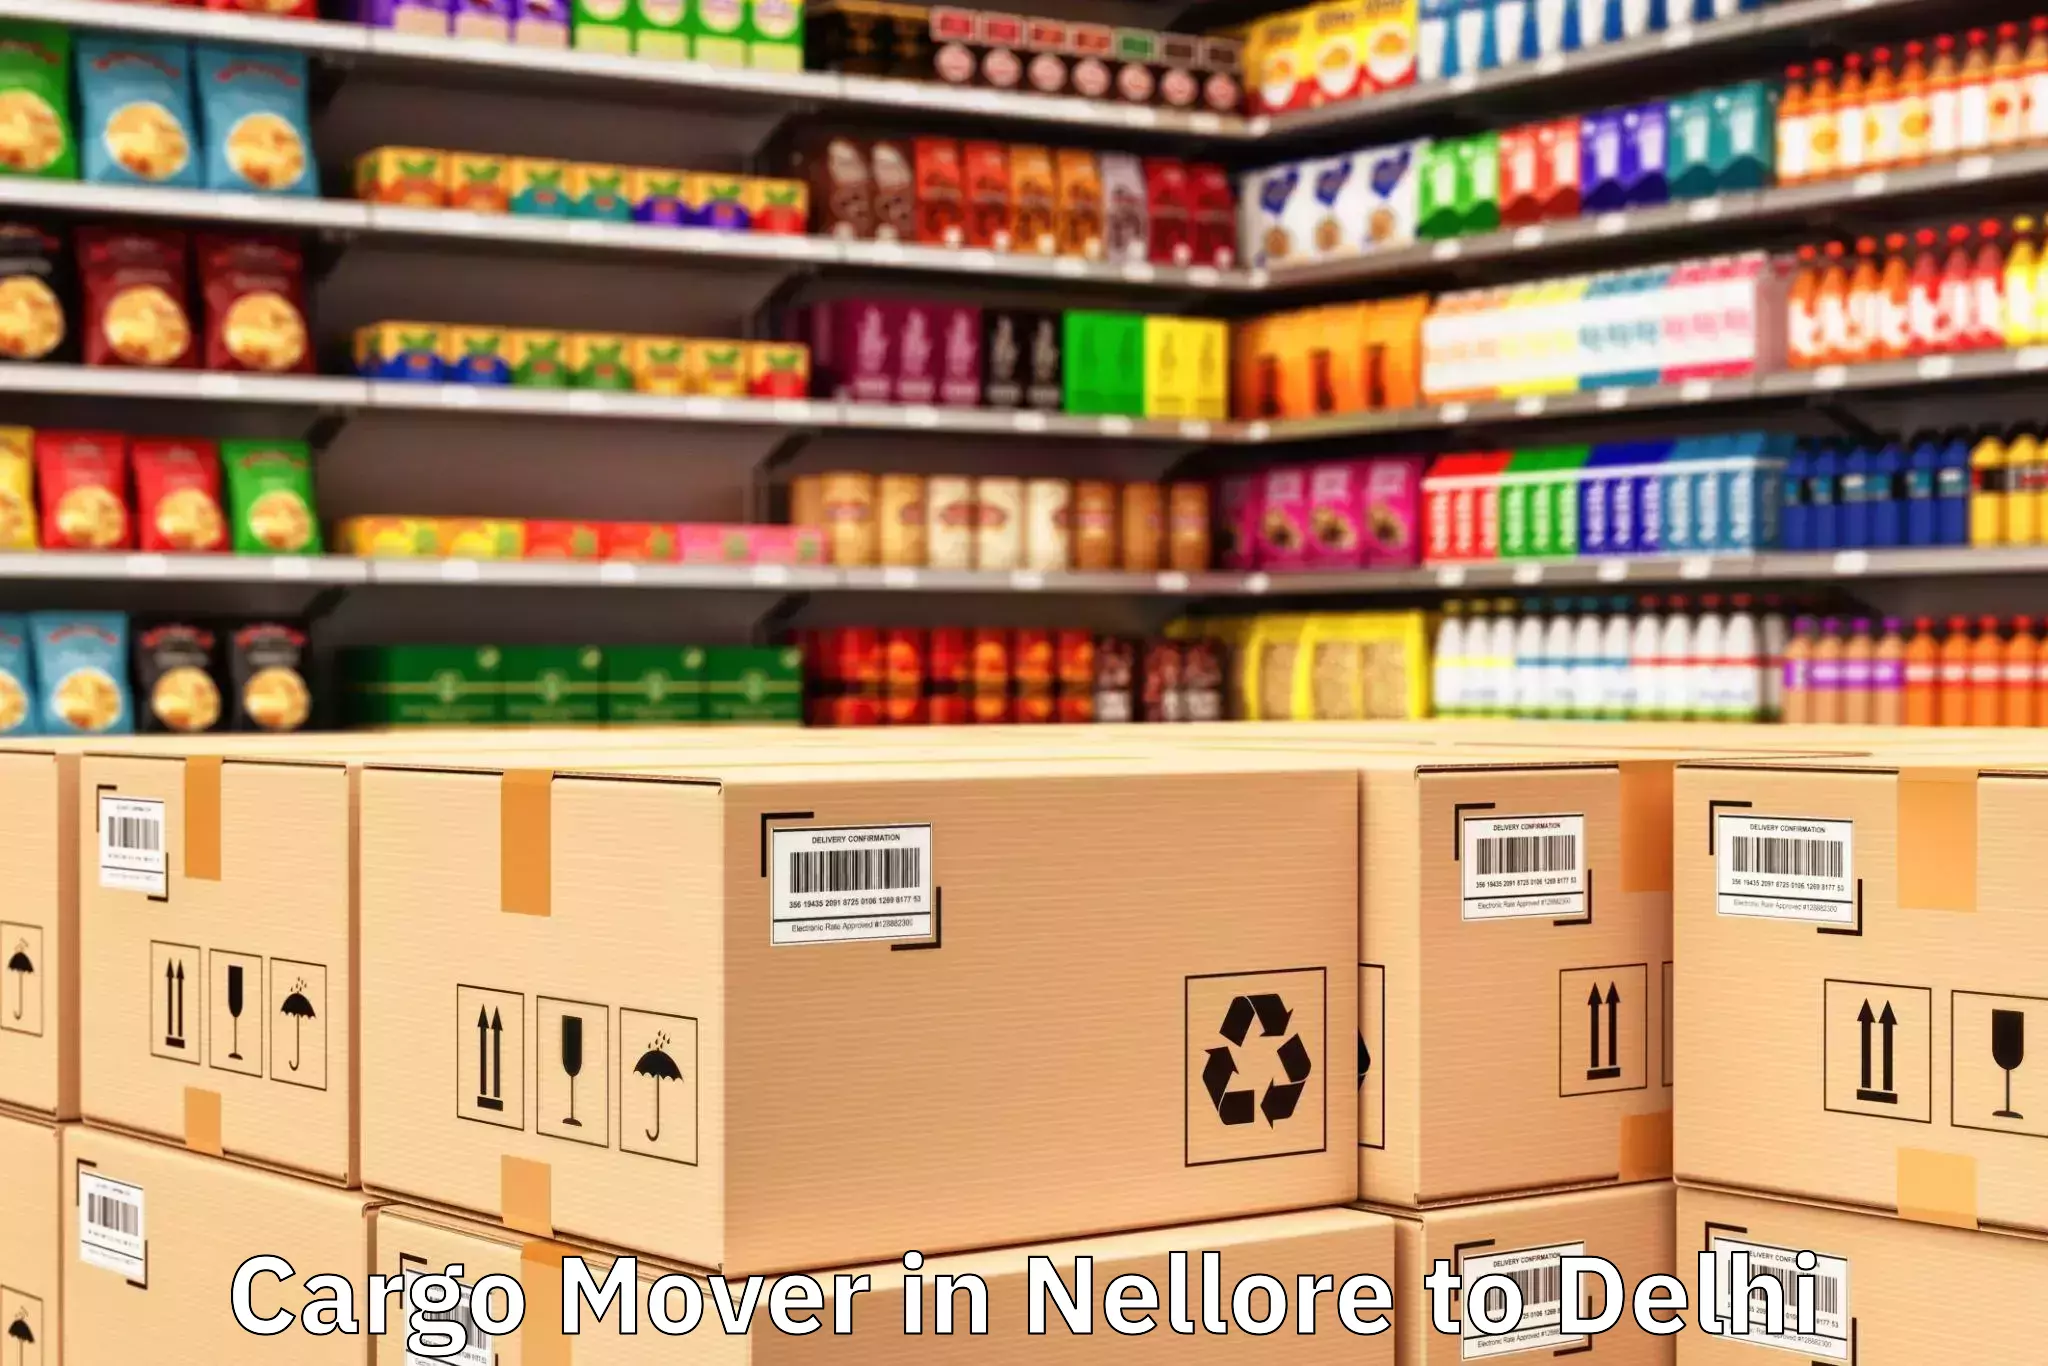 Top Nellore to Delhi Cargo Mover Available